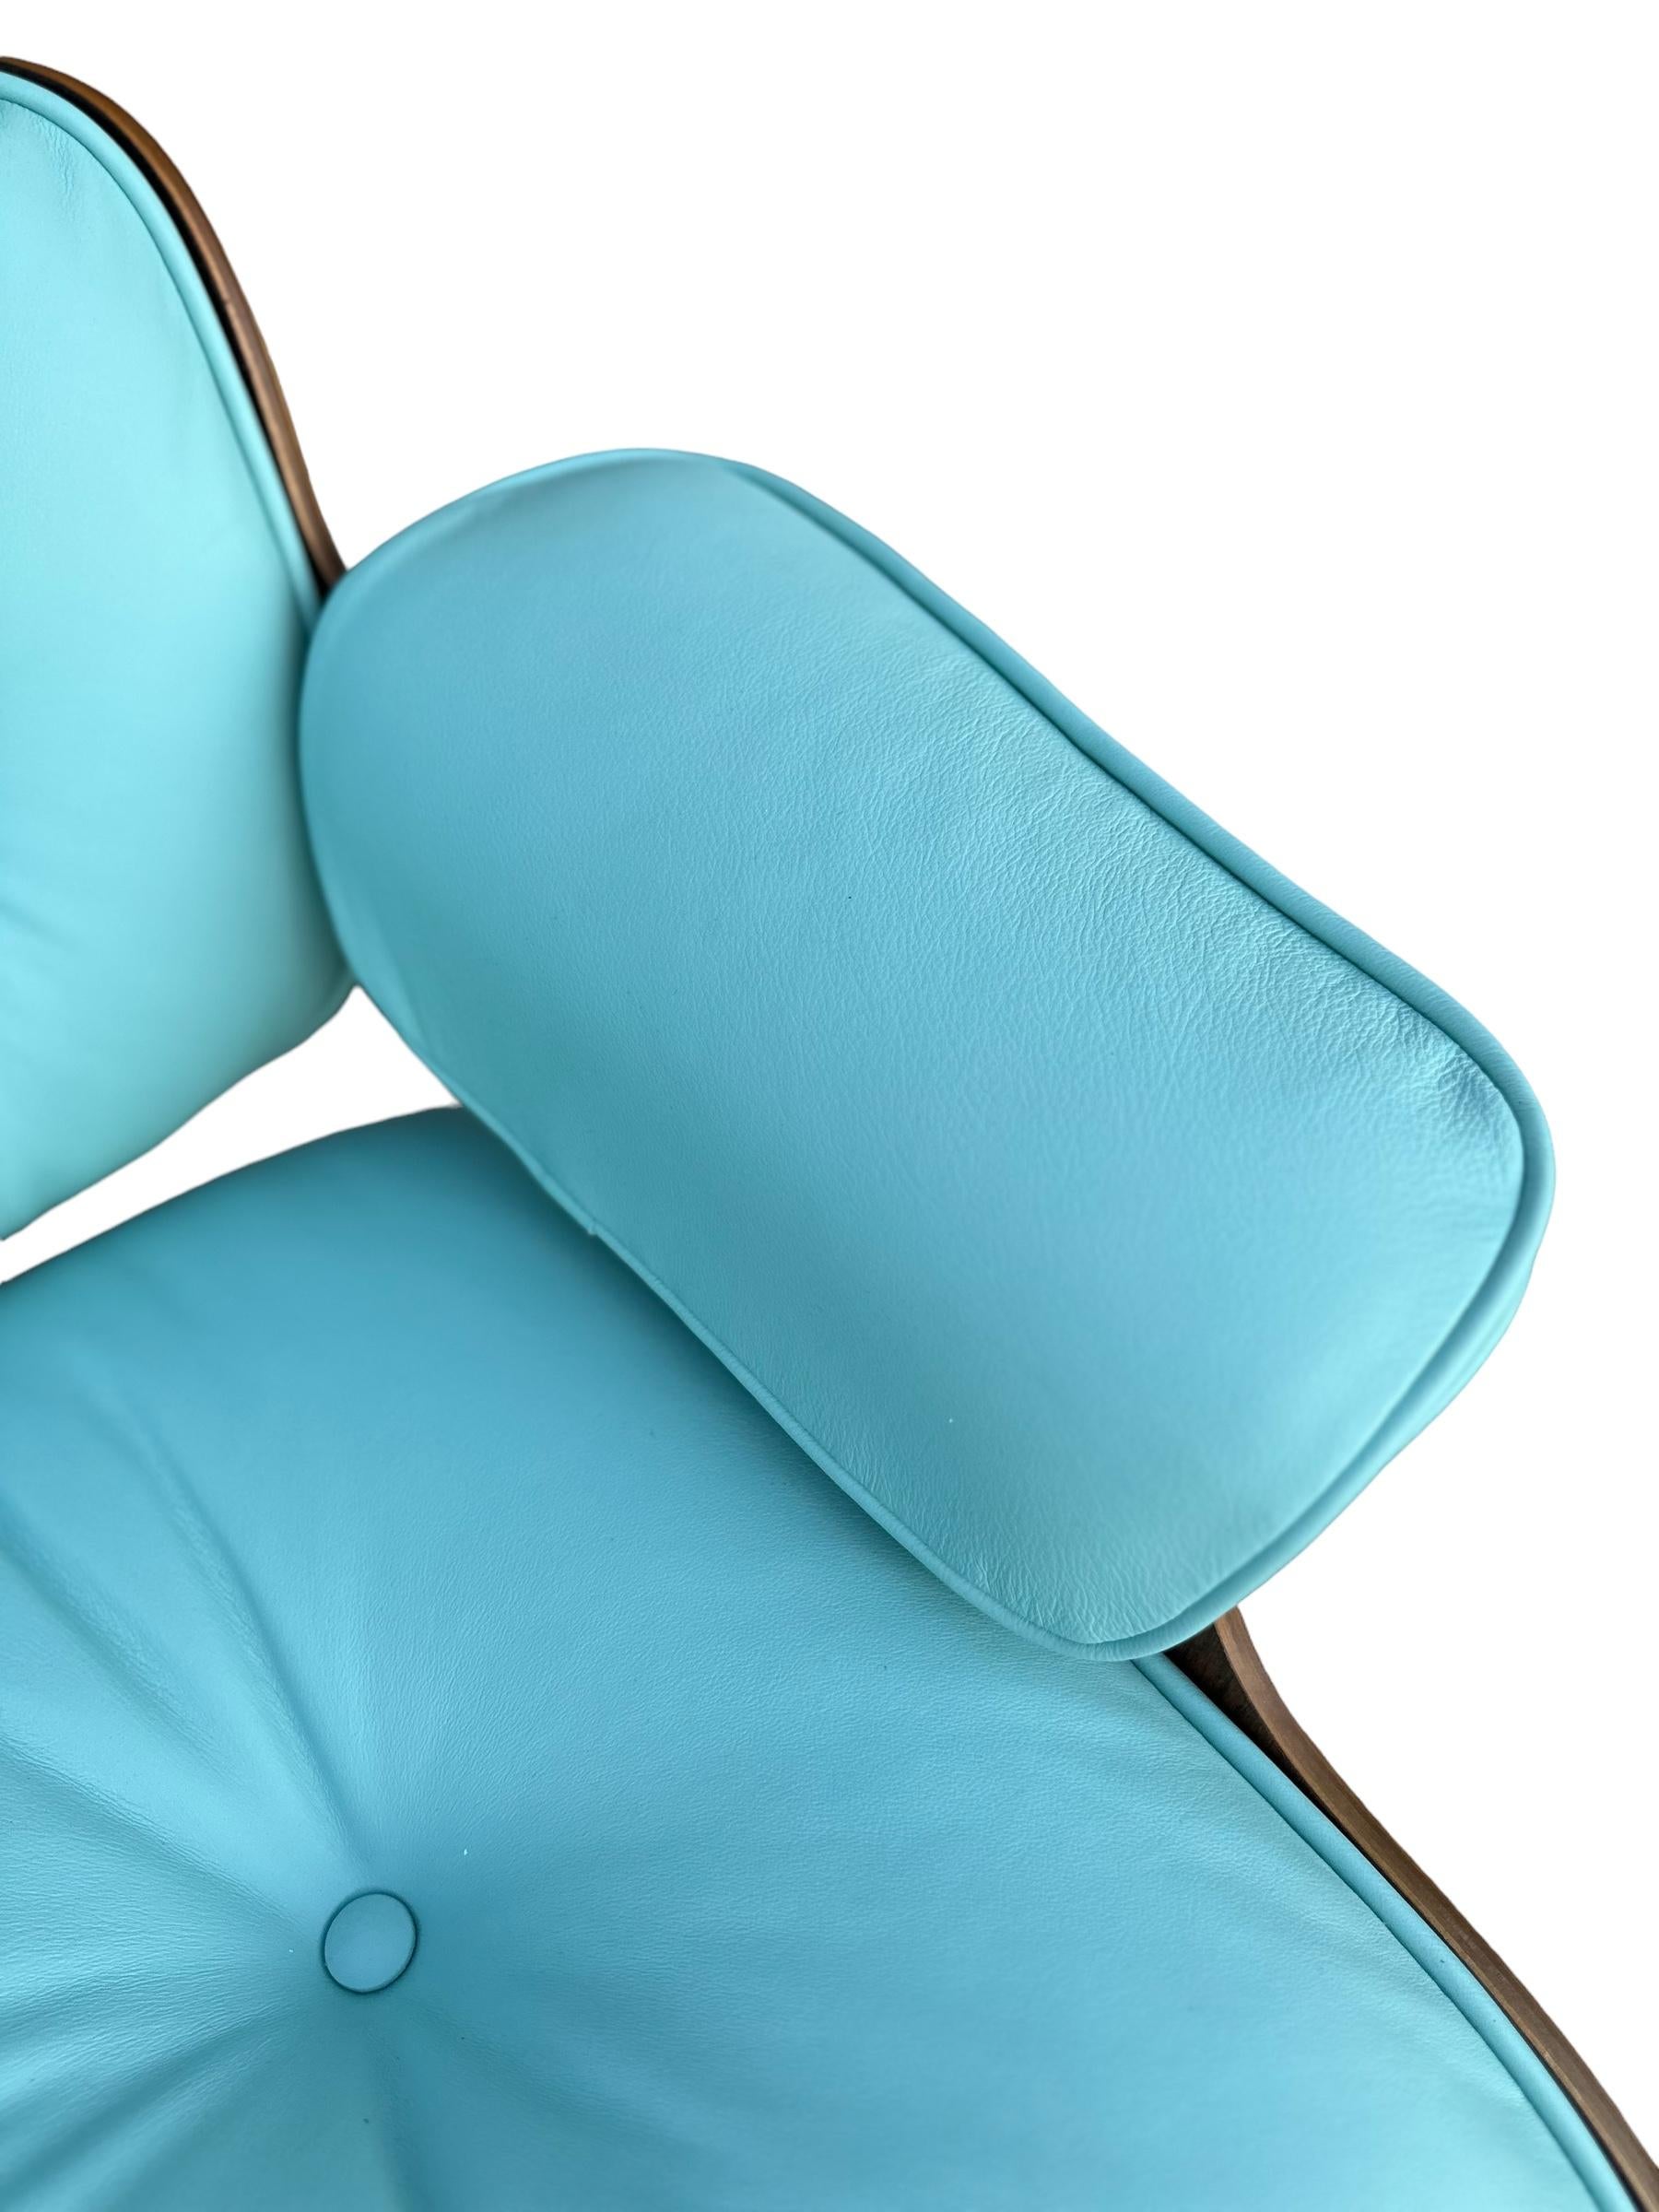 Américain Fauteuil de salon et repose-pieds Eames restaurés avec nouveau cuir bleu Tiffany